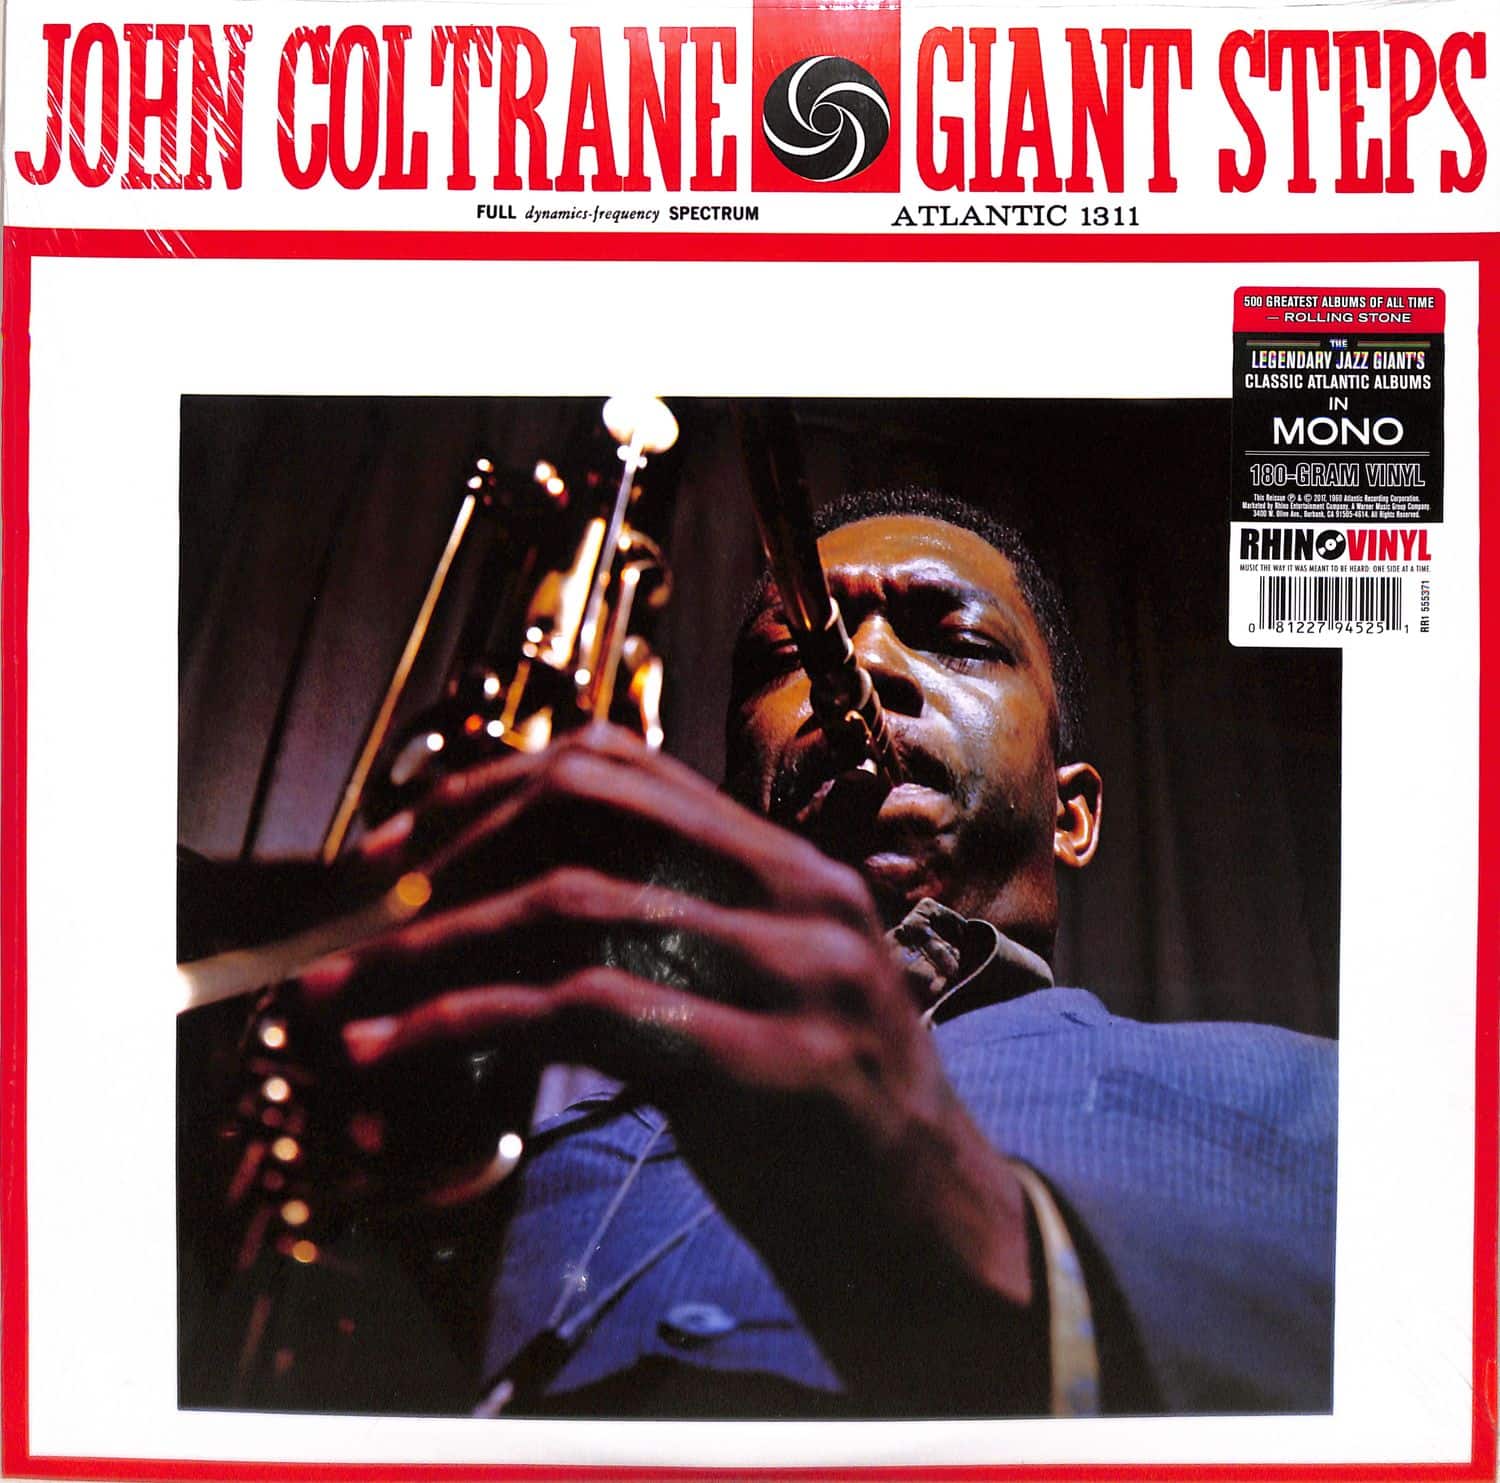 John Coltrane - GIANT STEPS 